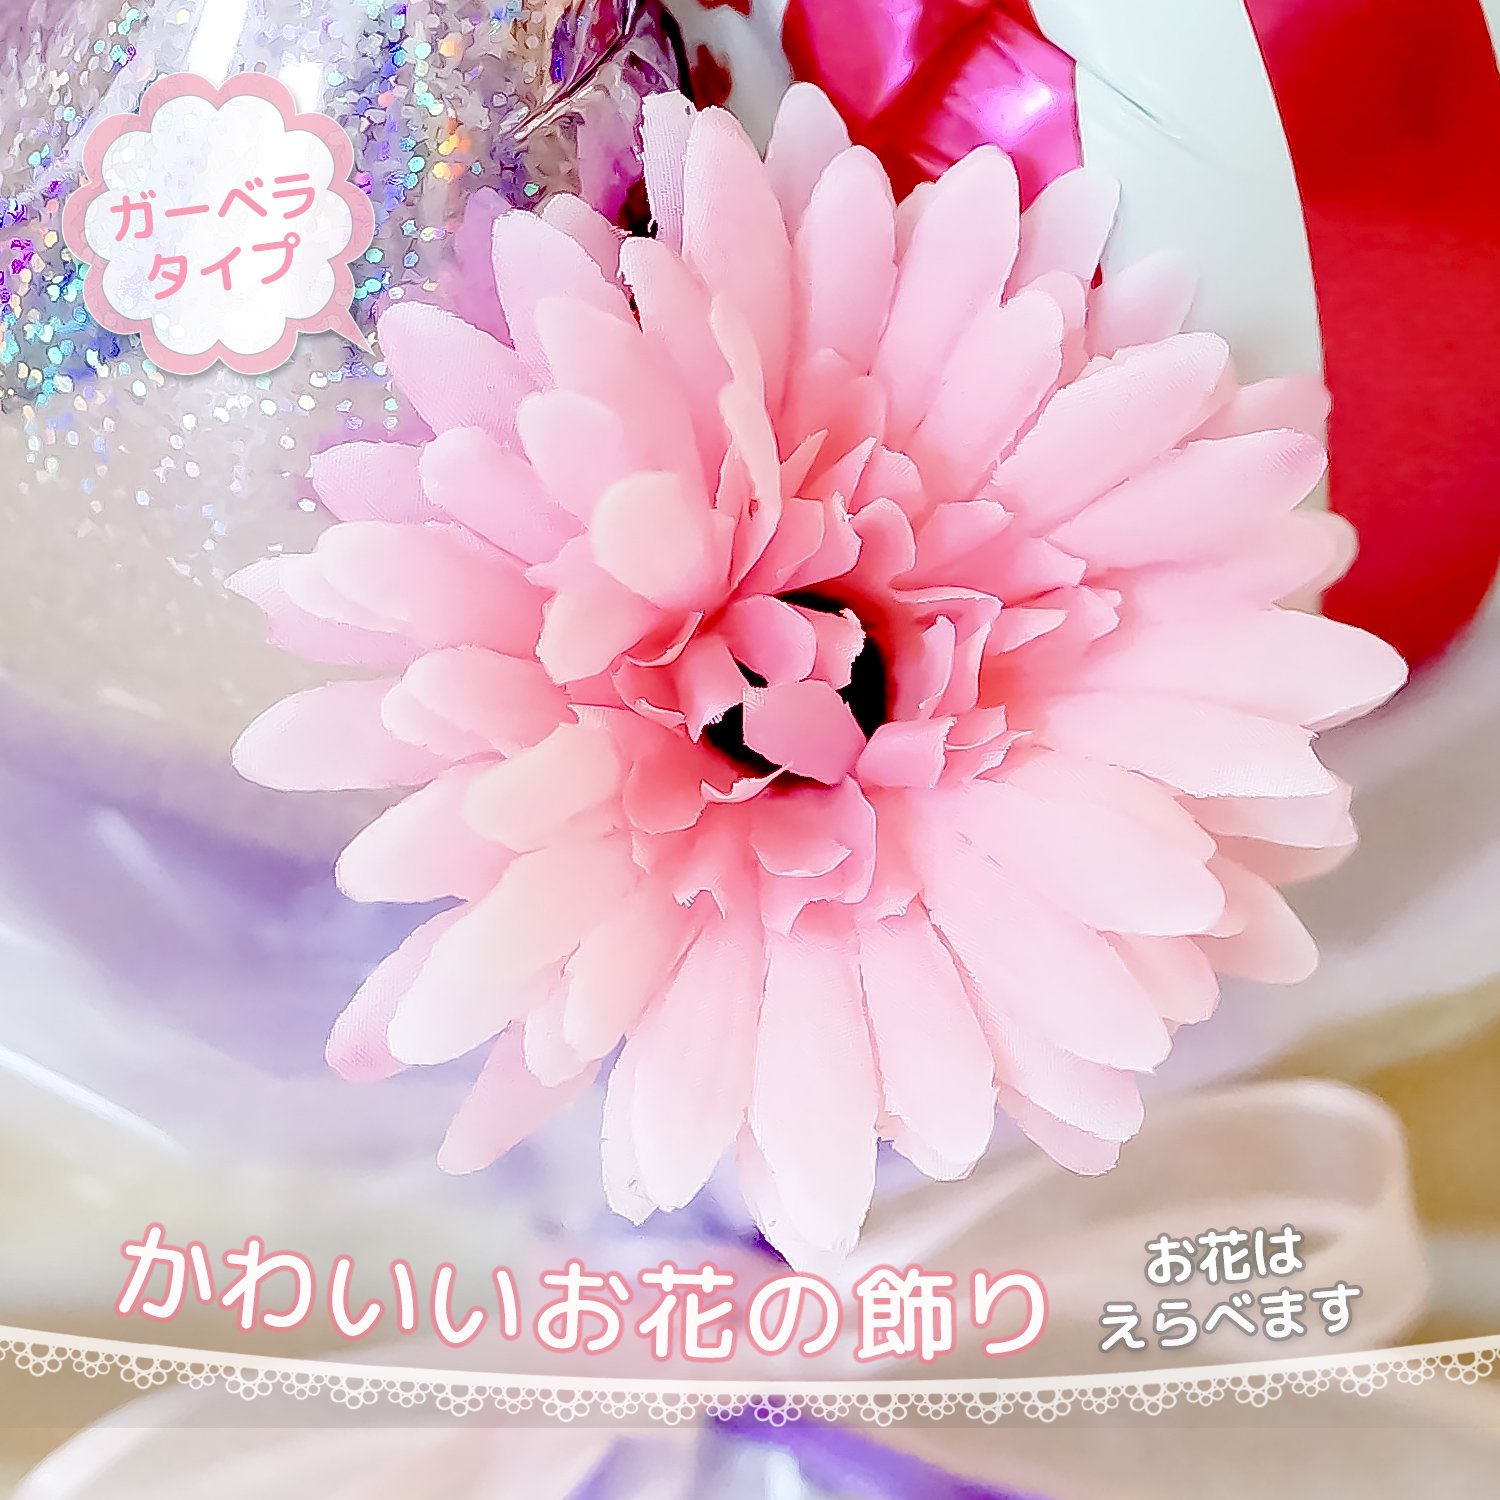 発表会 95 ピンク パルーン 風船 発表会 誕生日 サプライズ プレゼント バルーンブーケ バルーン花束 ピンク 音符 音符バルーン Sweet Heart Balloon